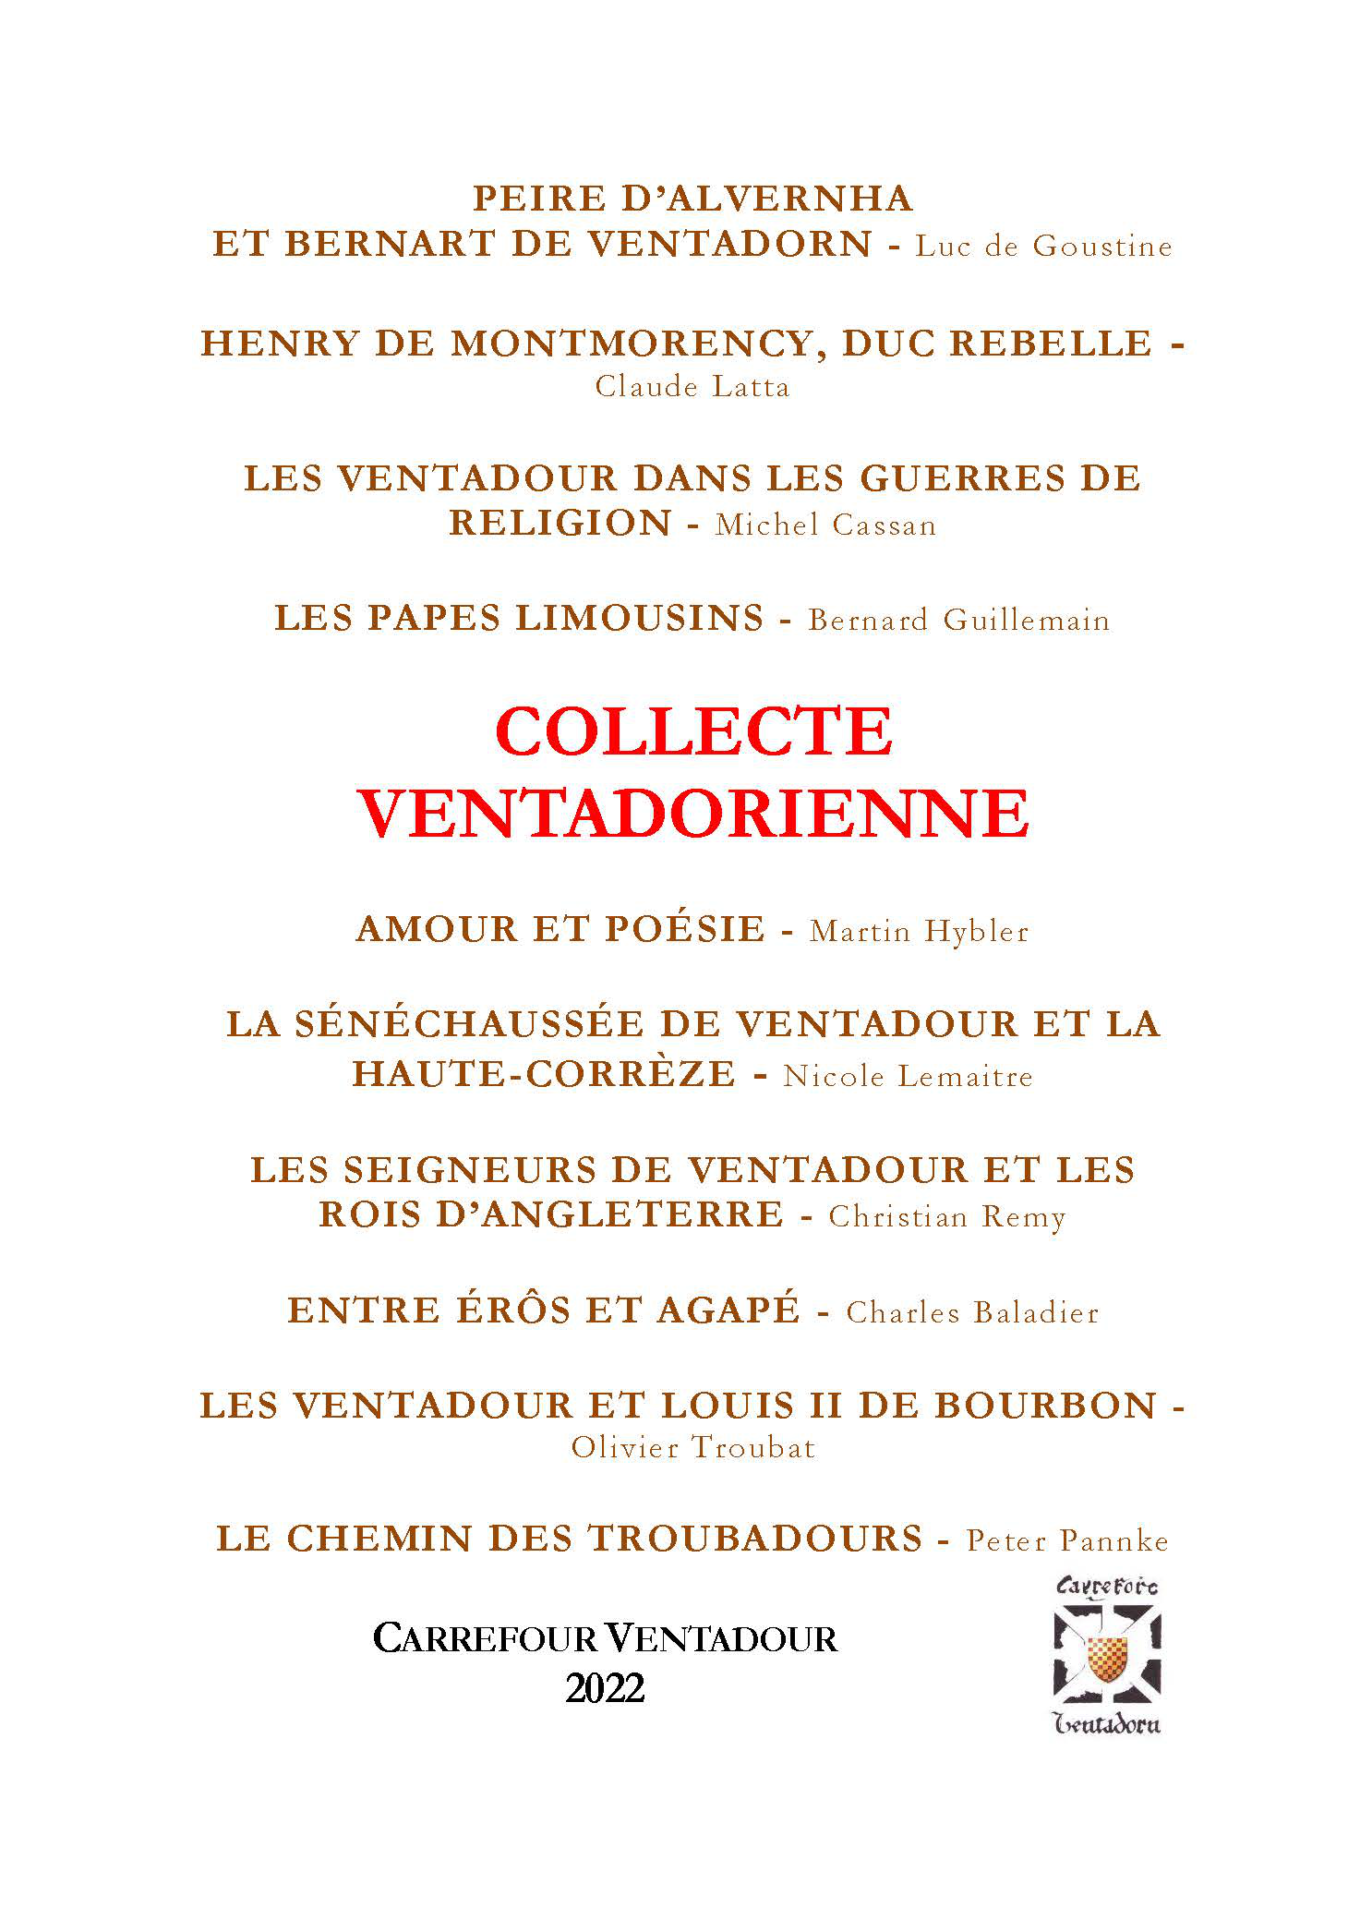 Collecte ventadorienne : réédition groupée des Cahiers parus de 1998 À 2003